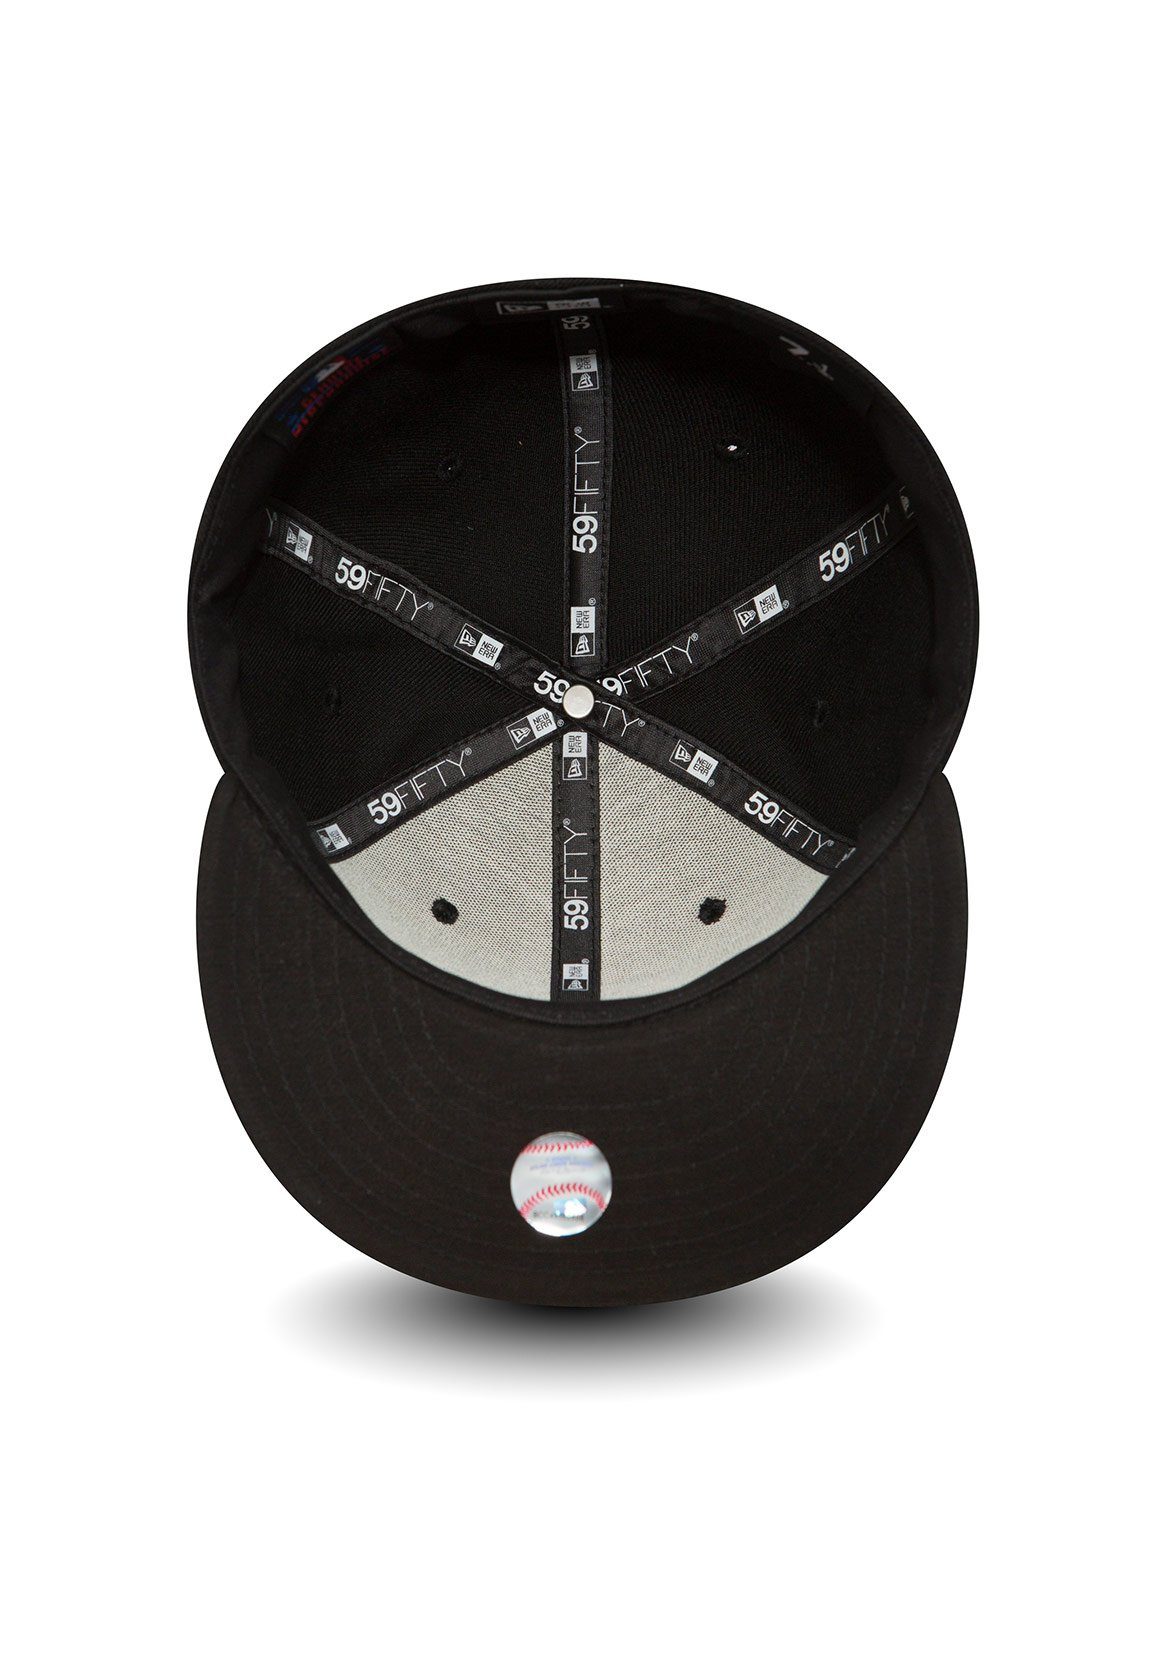 New 59Fiftys New - Era Cap Black-White Baseball DODGERS - Schwarz/Weiß Era Cap LA